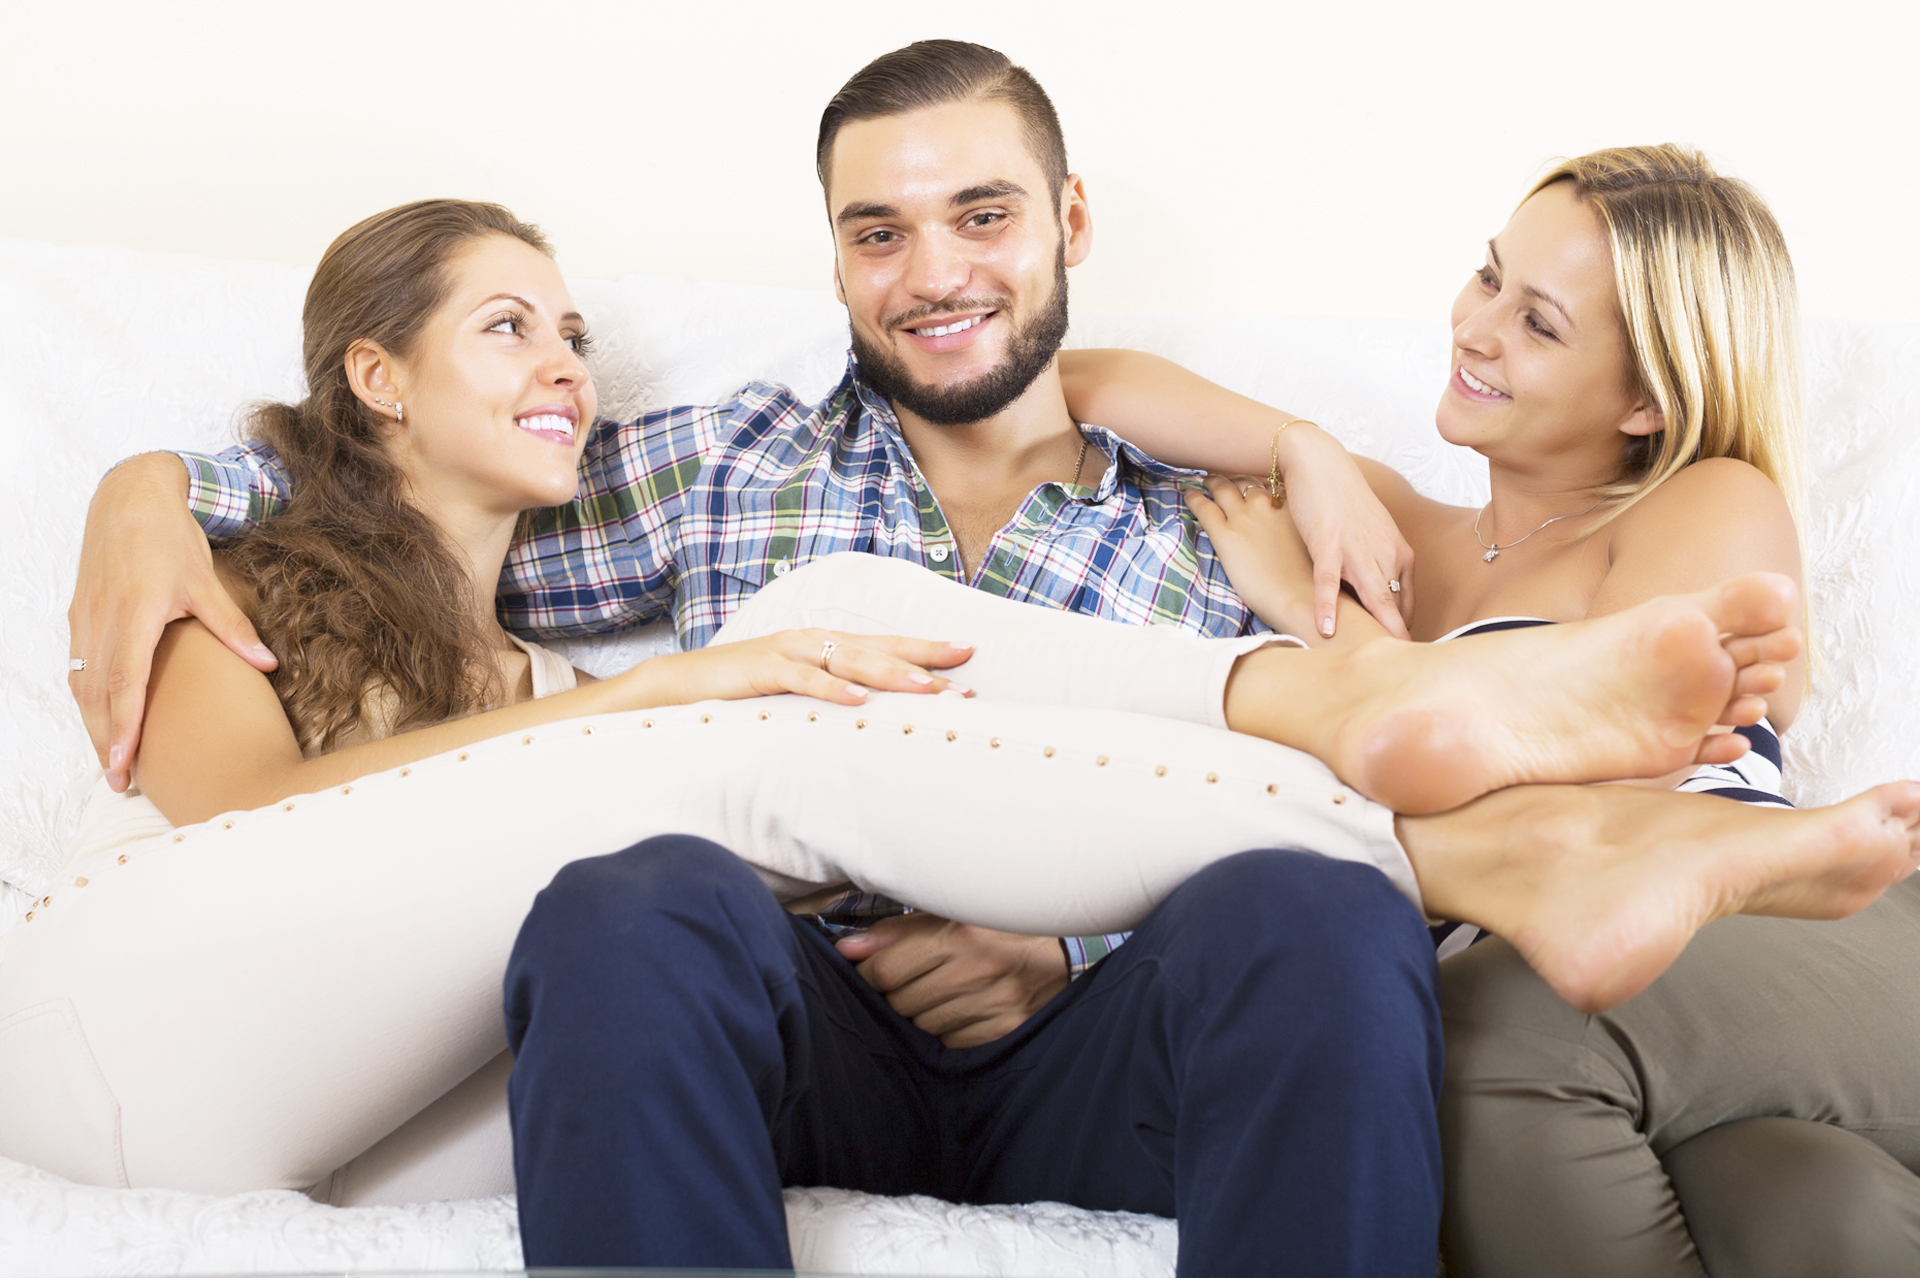 Six Benefits of Polyamorous Relationships